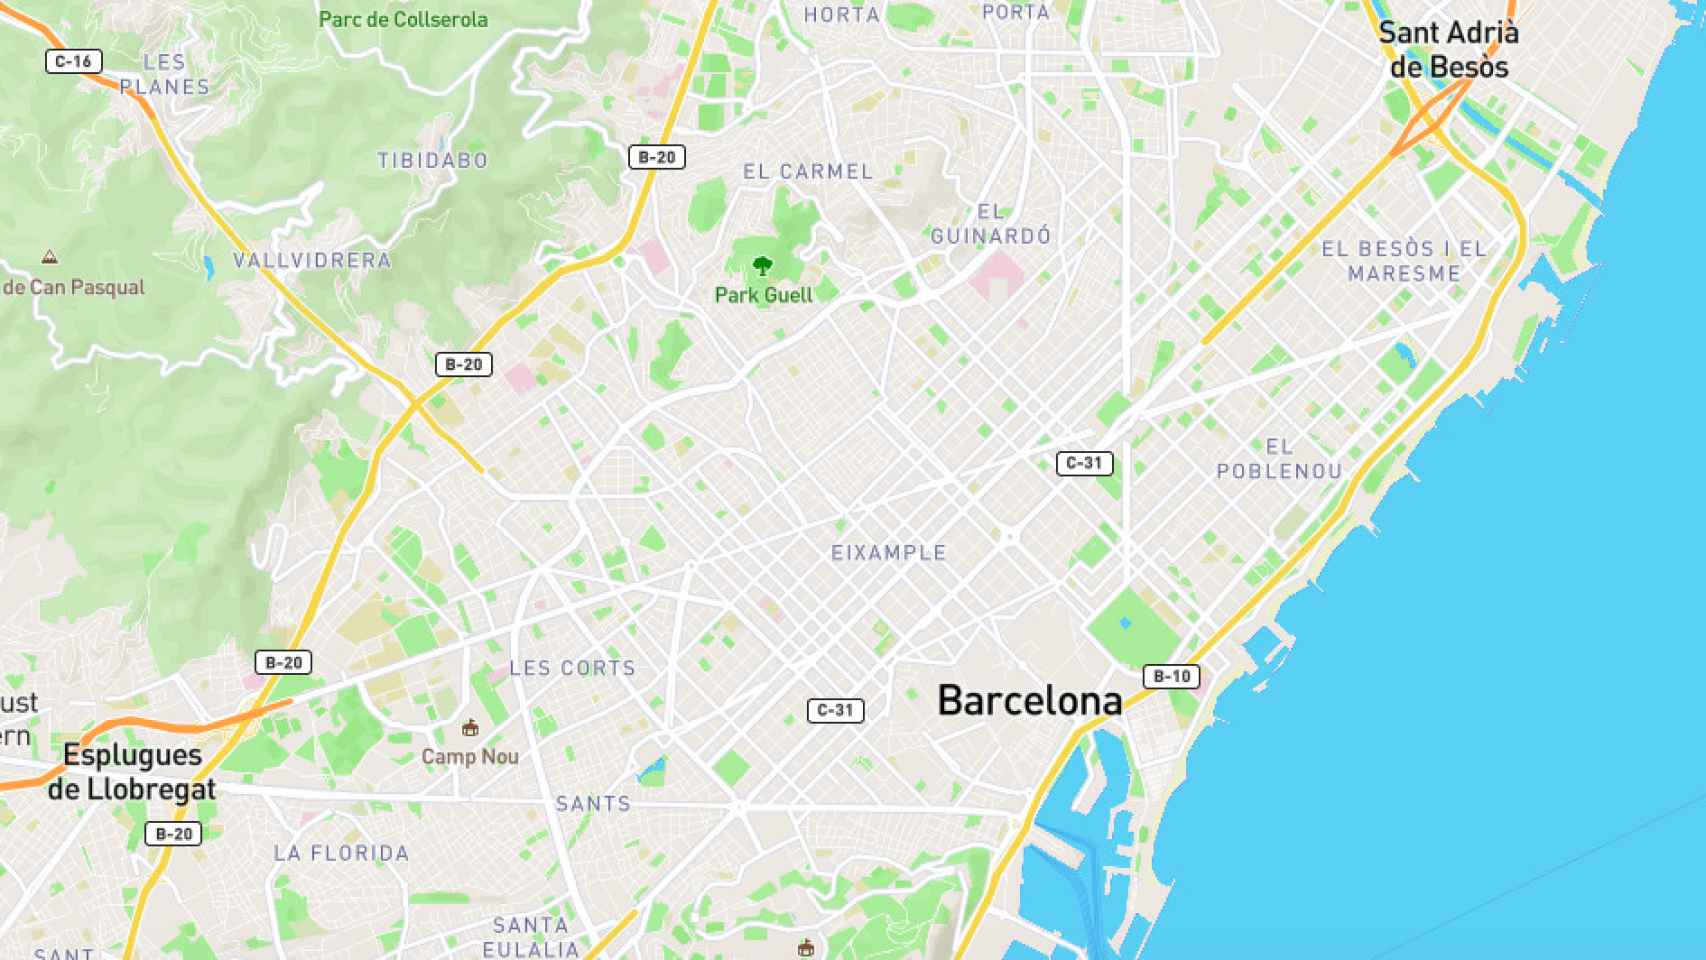 Mapa de Barcelona de la aplicación 1km geomatico